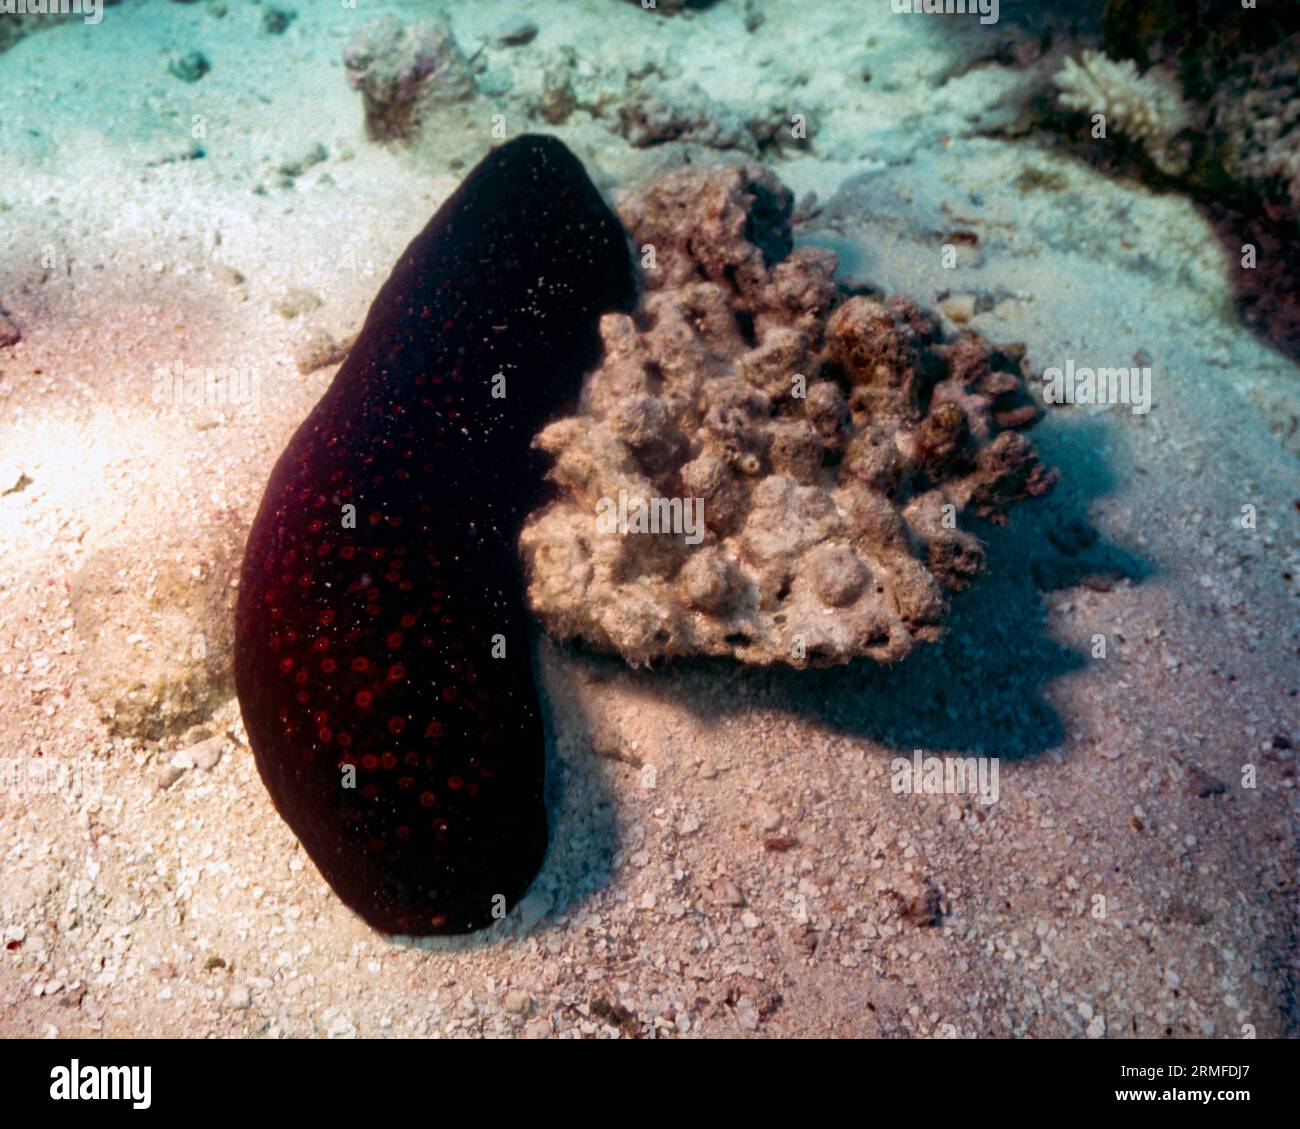 Sea cucumber (Holothuria (Mertensiothuria) fuscorubra) from the Maldives. Stock Photo